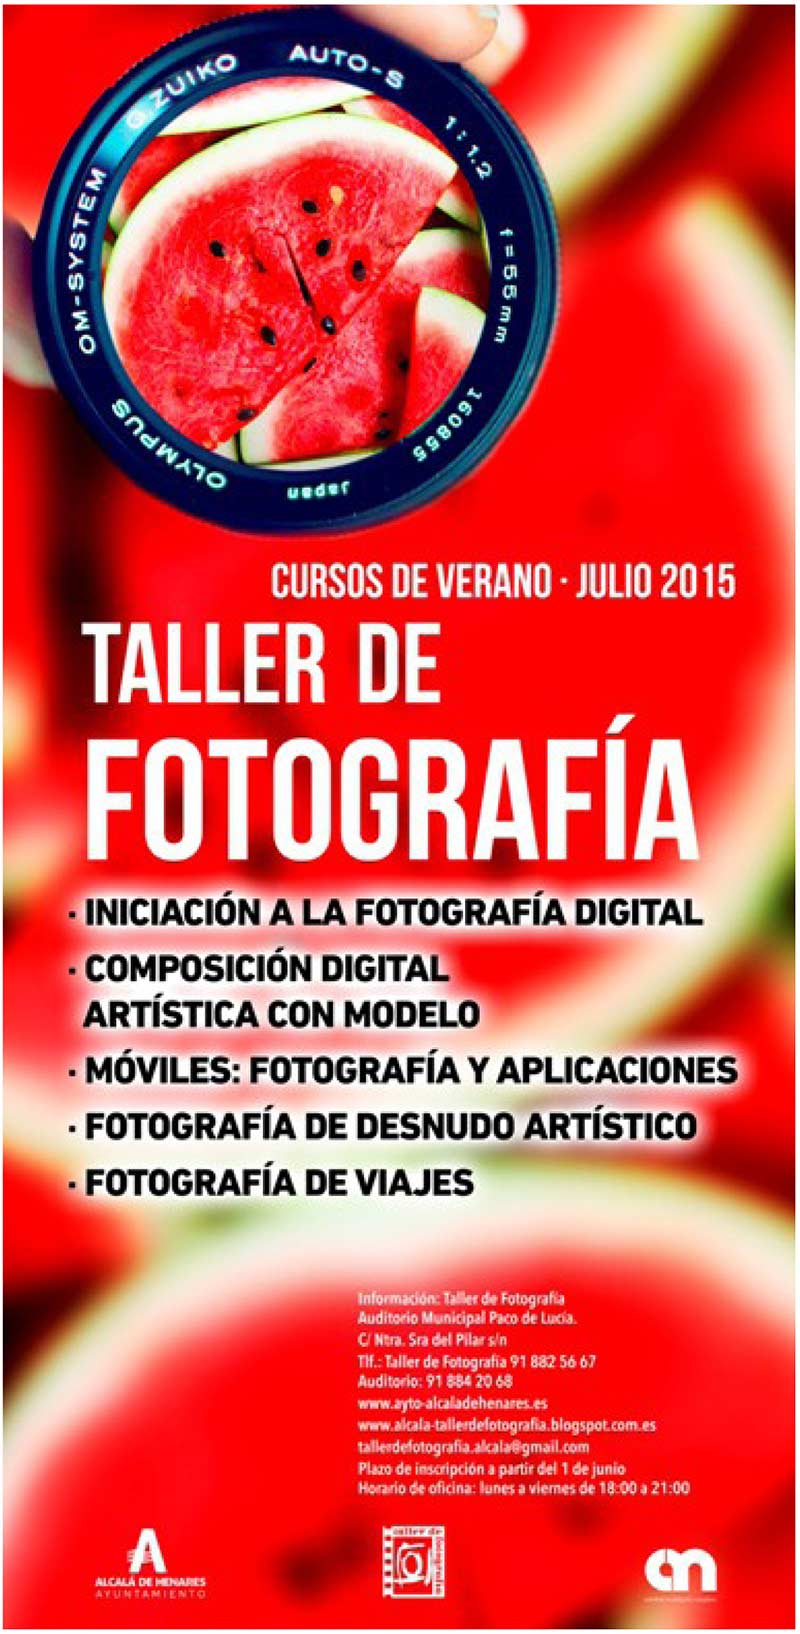 Cursos-Taller-de-Fotografía-Julio-2015-1